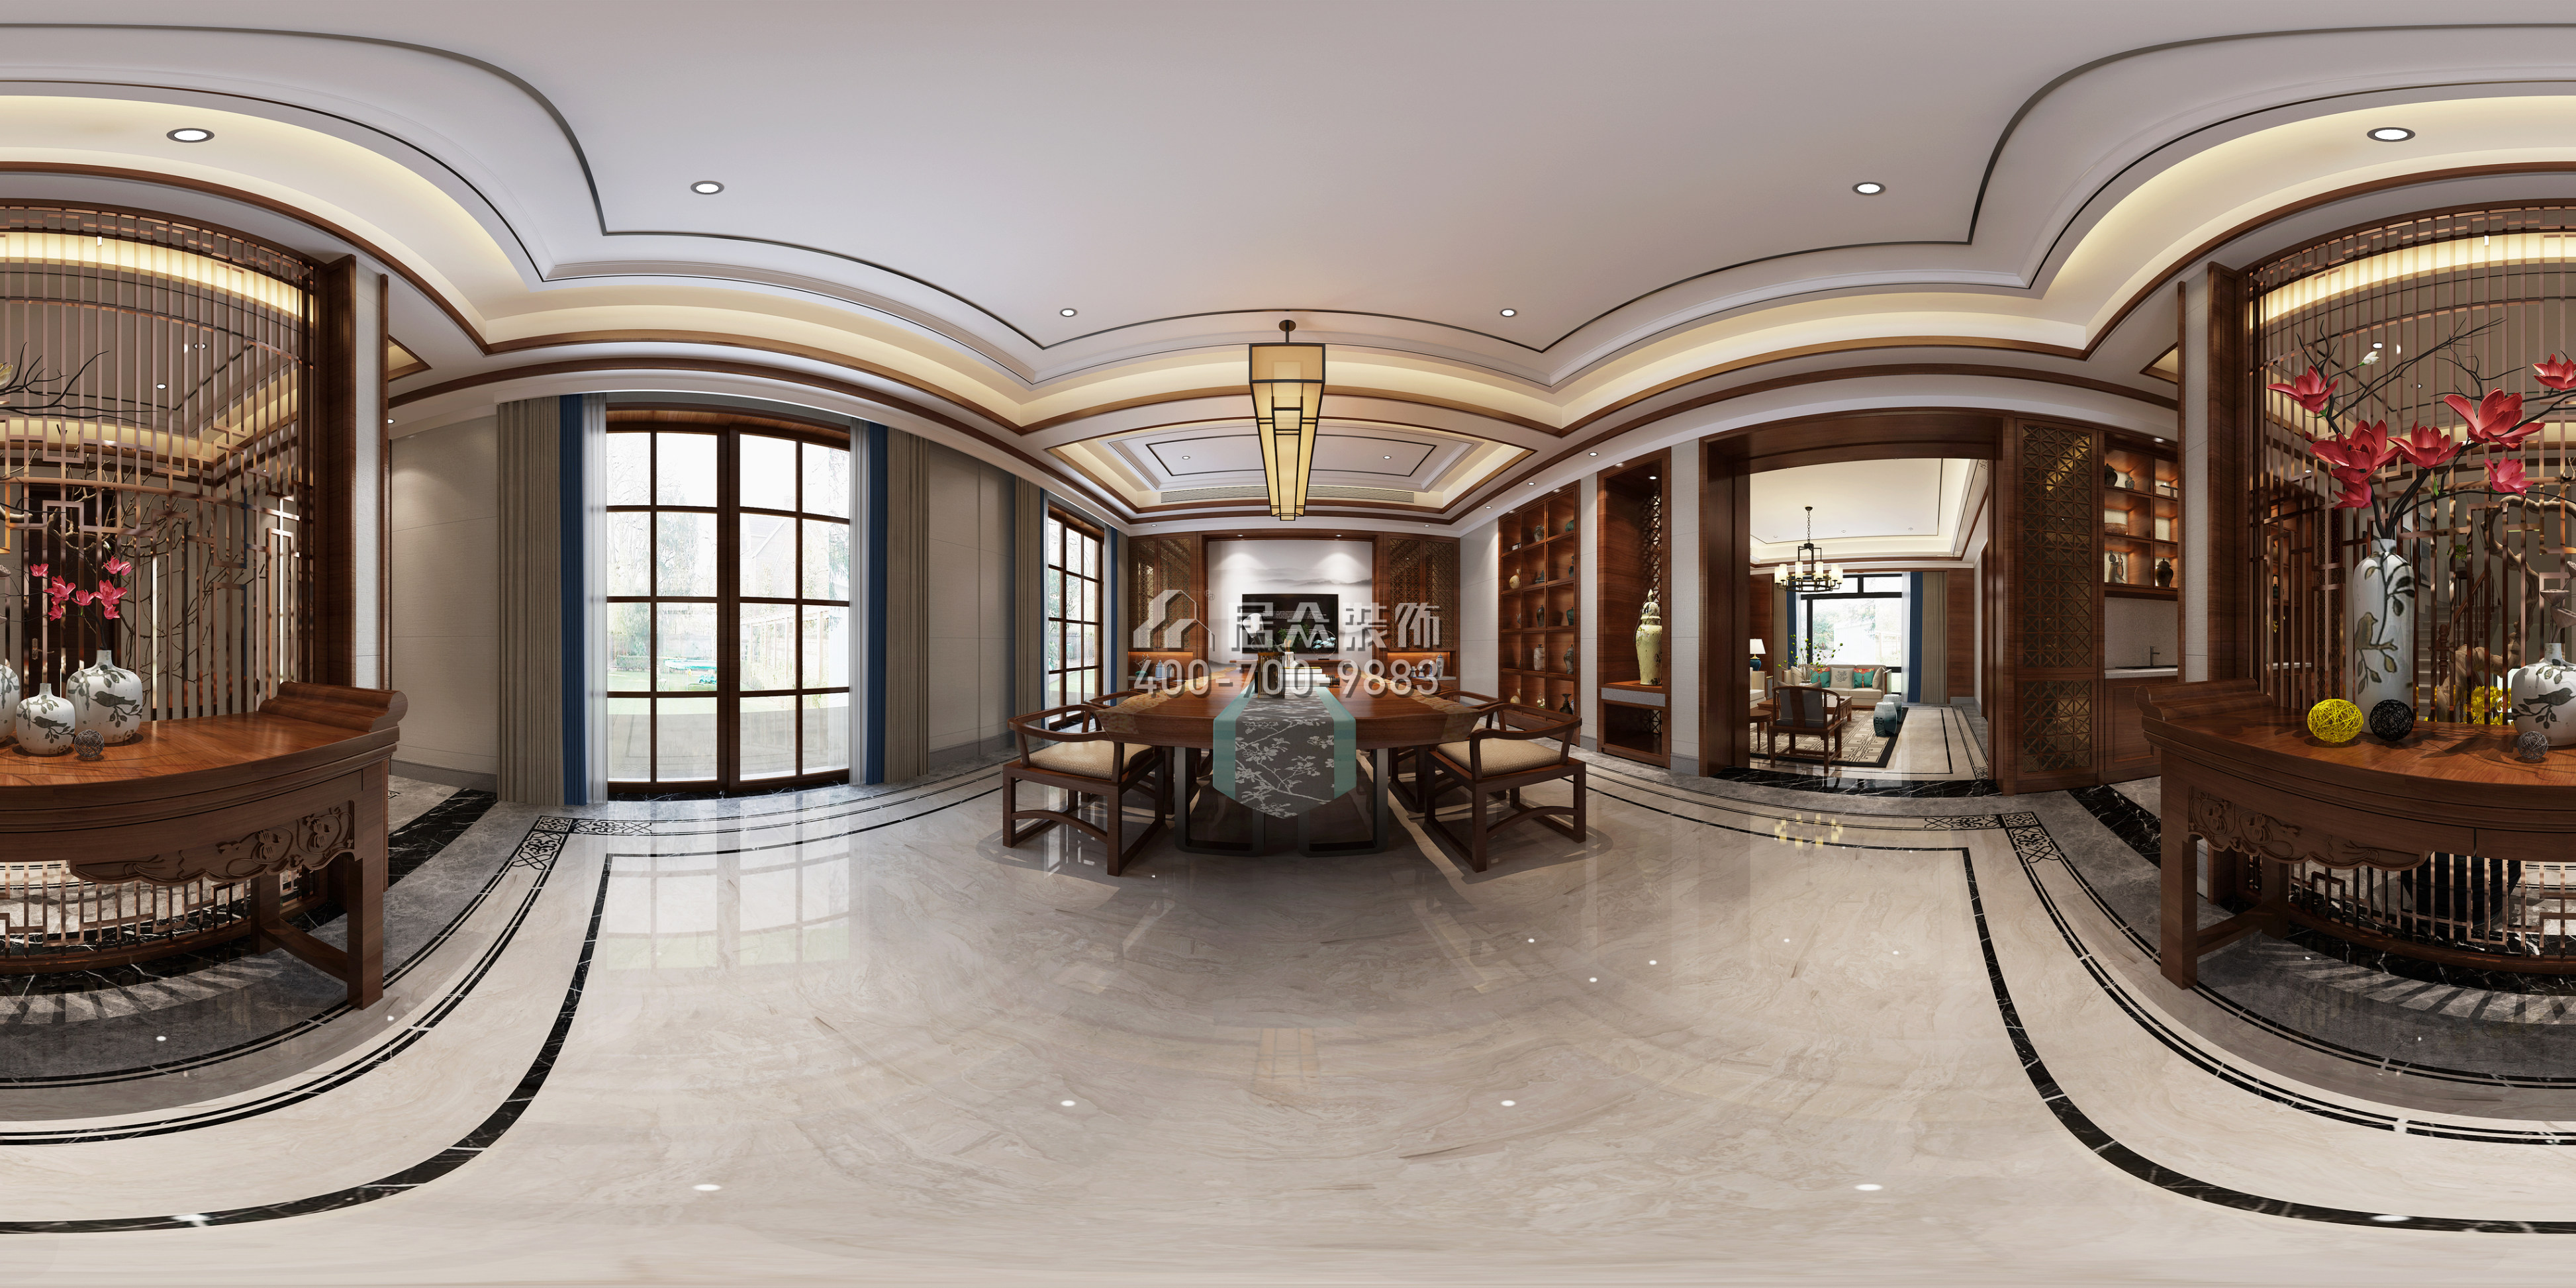 龙吟水榭650平方米中式风格别墅户型客厅装修效果图